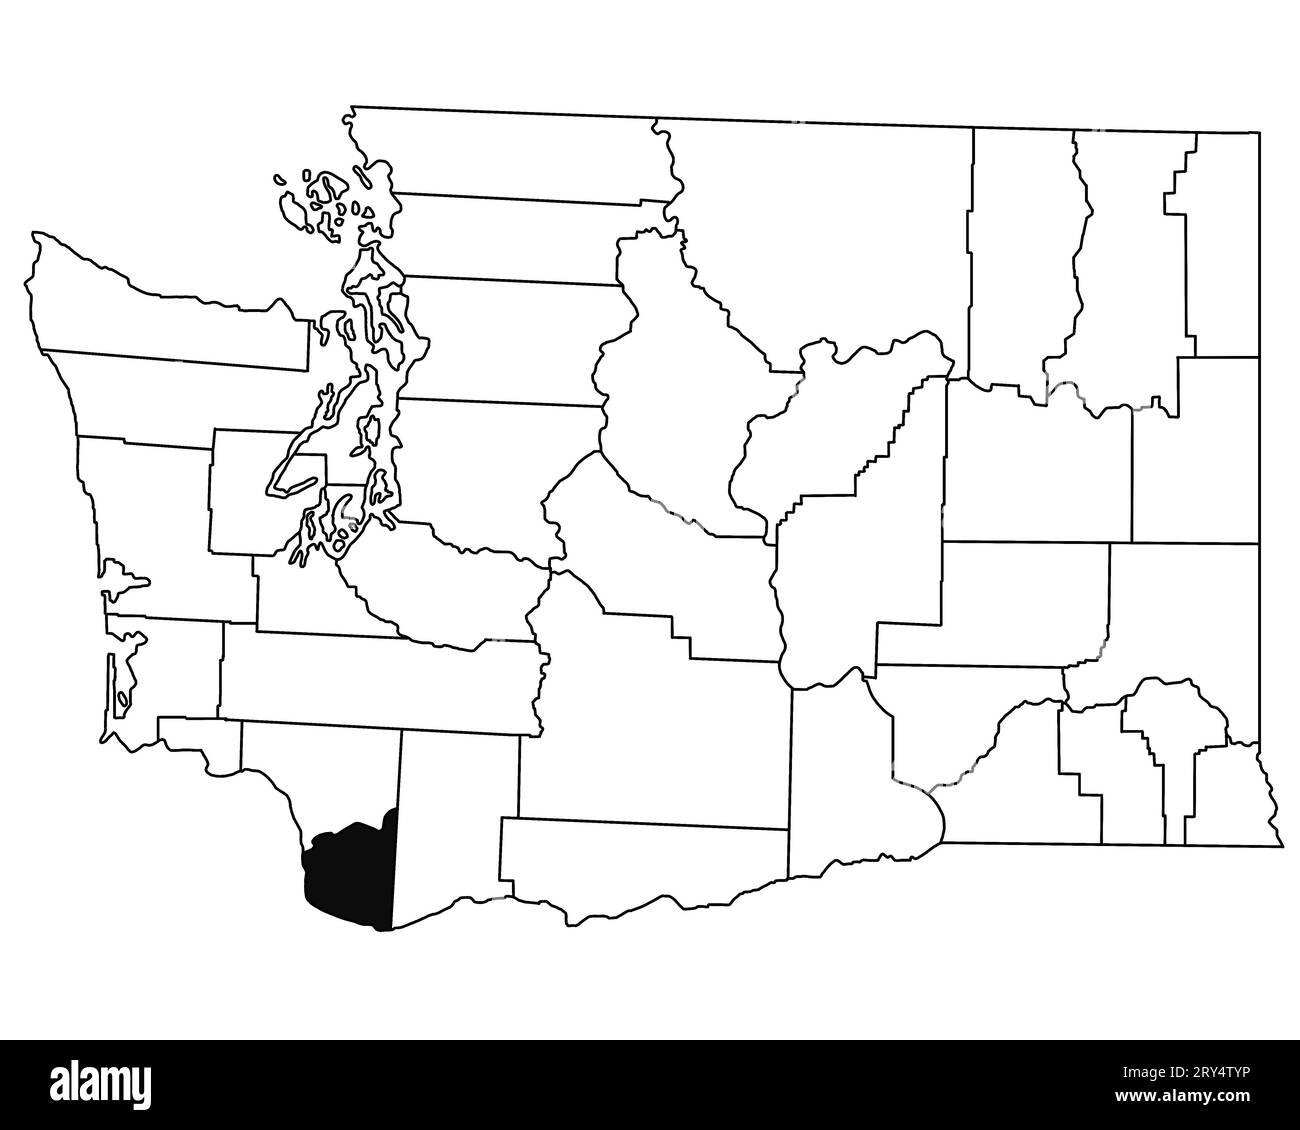 Mappa della contea di Clark nello stato di Washington DC su sfondo bianco. Mappa singola della contea evidenziata dal colore nero sulla mappa DI WASHINGTON. STATI UNITI, STATI UNITI Foto Stock